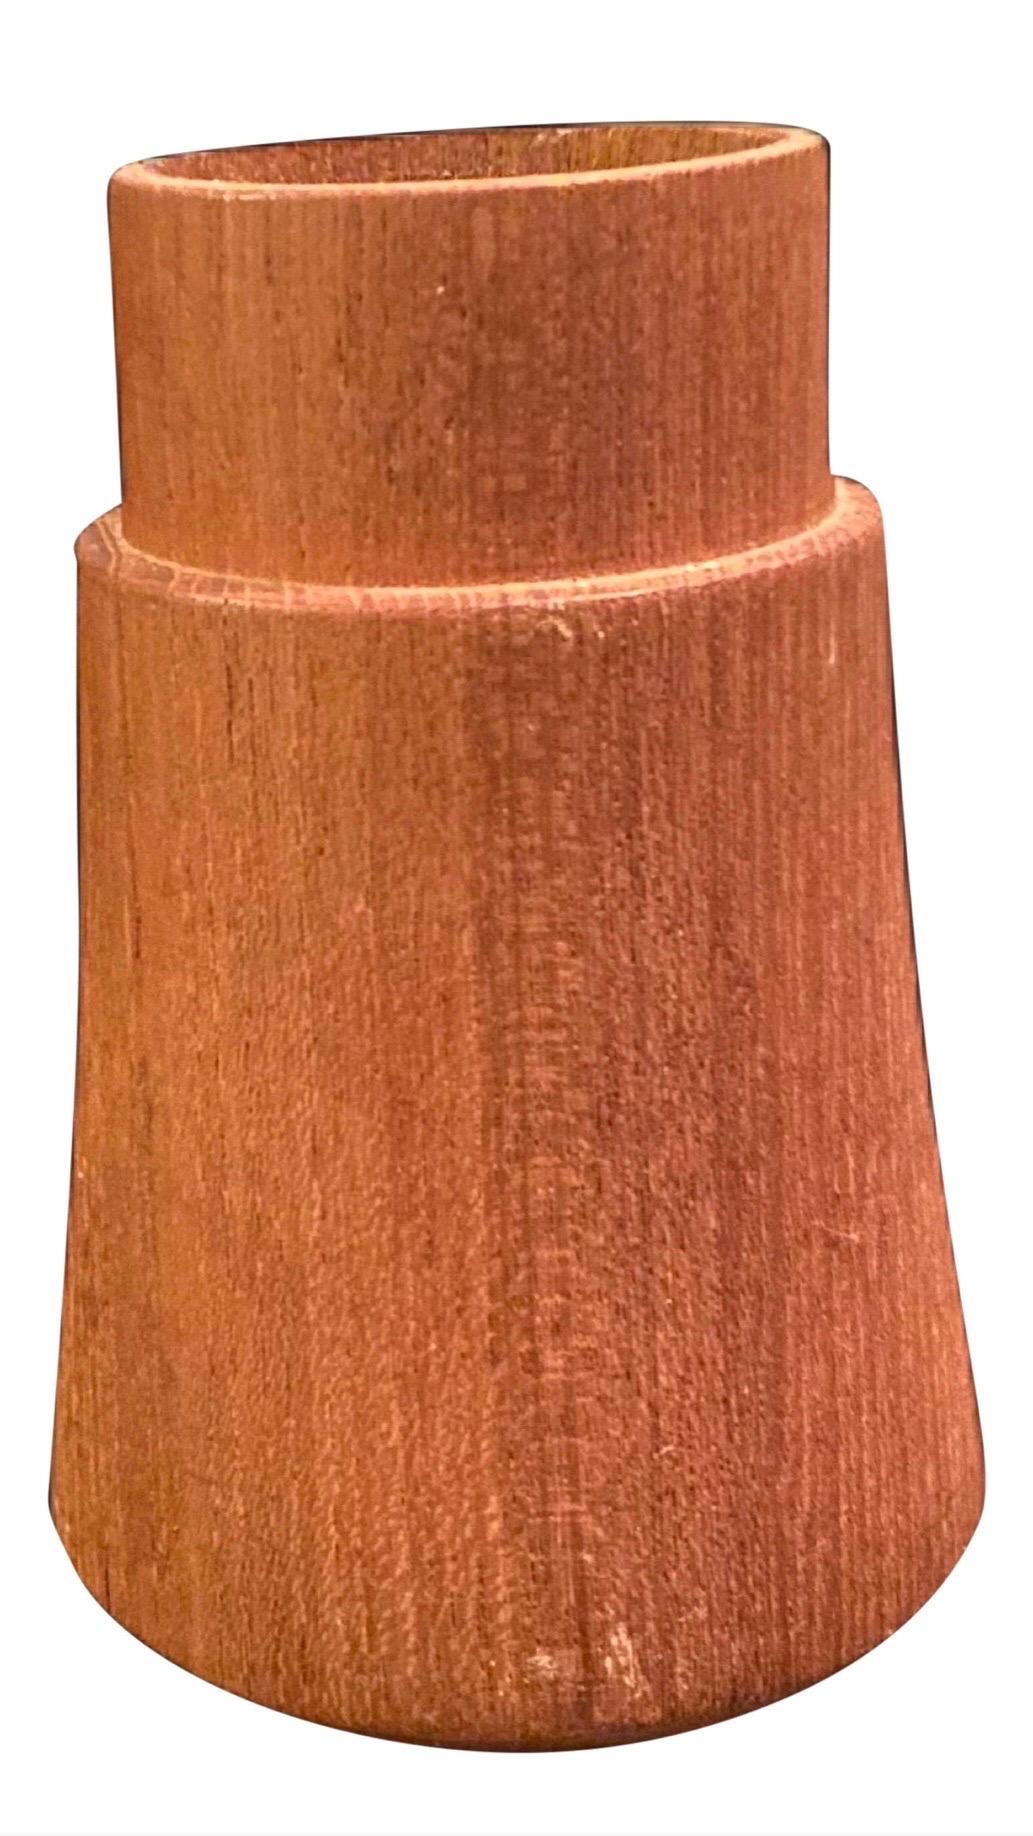 Vintage Dansk International Designs Teak Wood & Brass Candle Holder By Jens Quistgaard

Midcentury Danish modern teak and brass candleholder by Dansk. Midcentury handcrafted teak candlestick holder.  This elegant 5.25